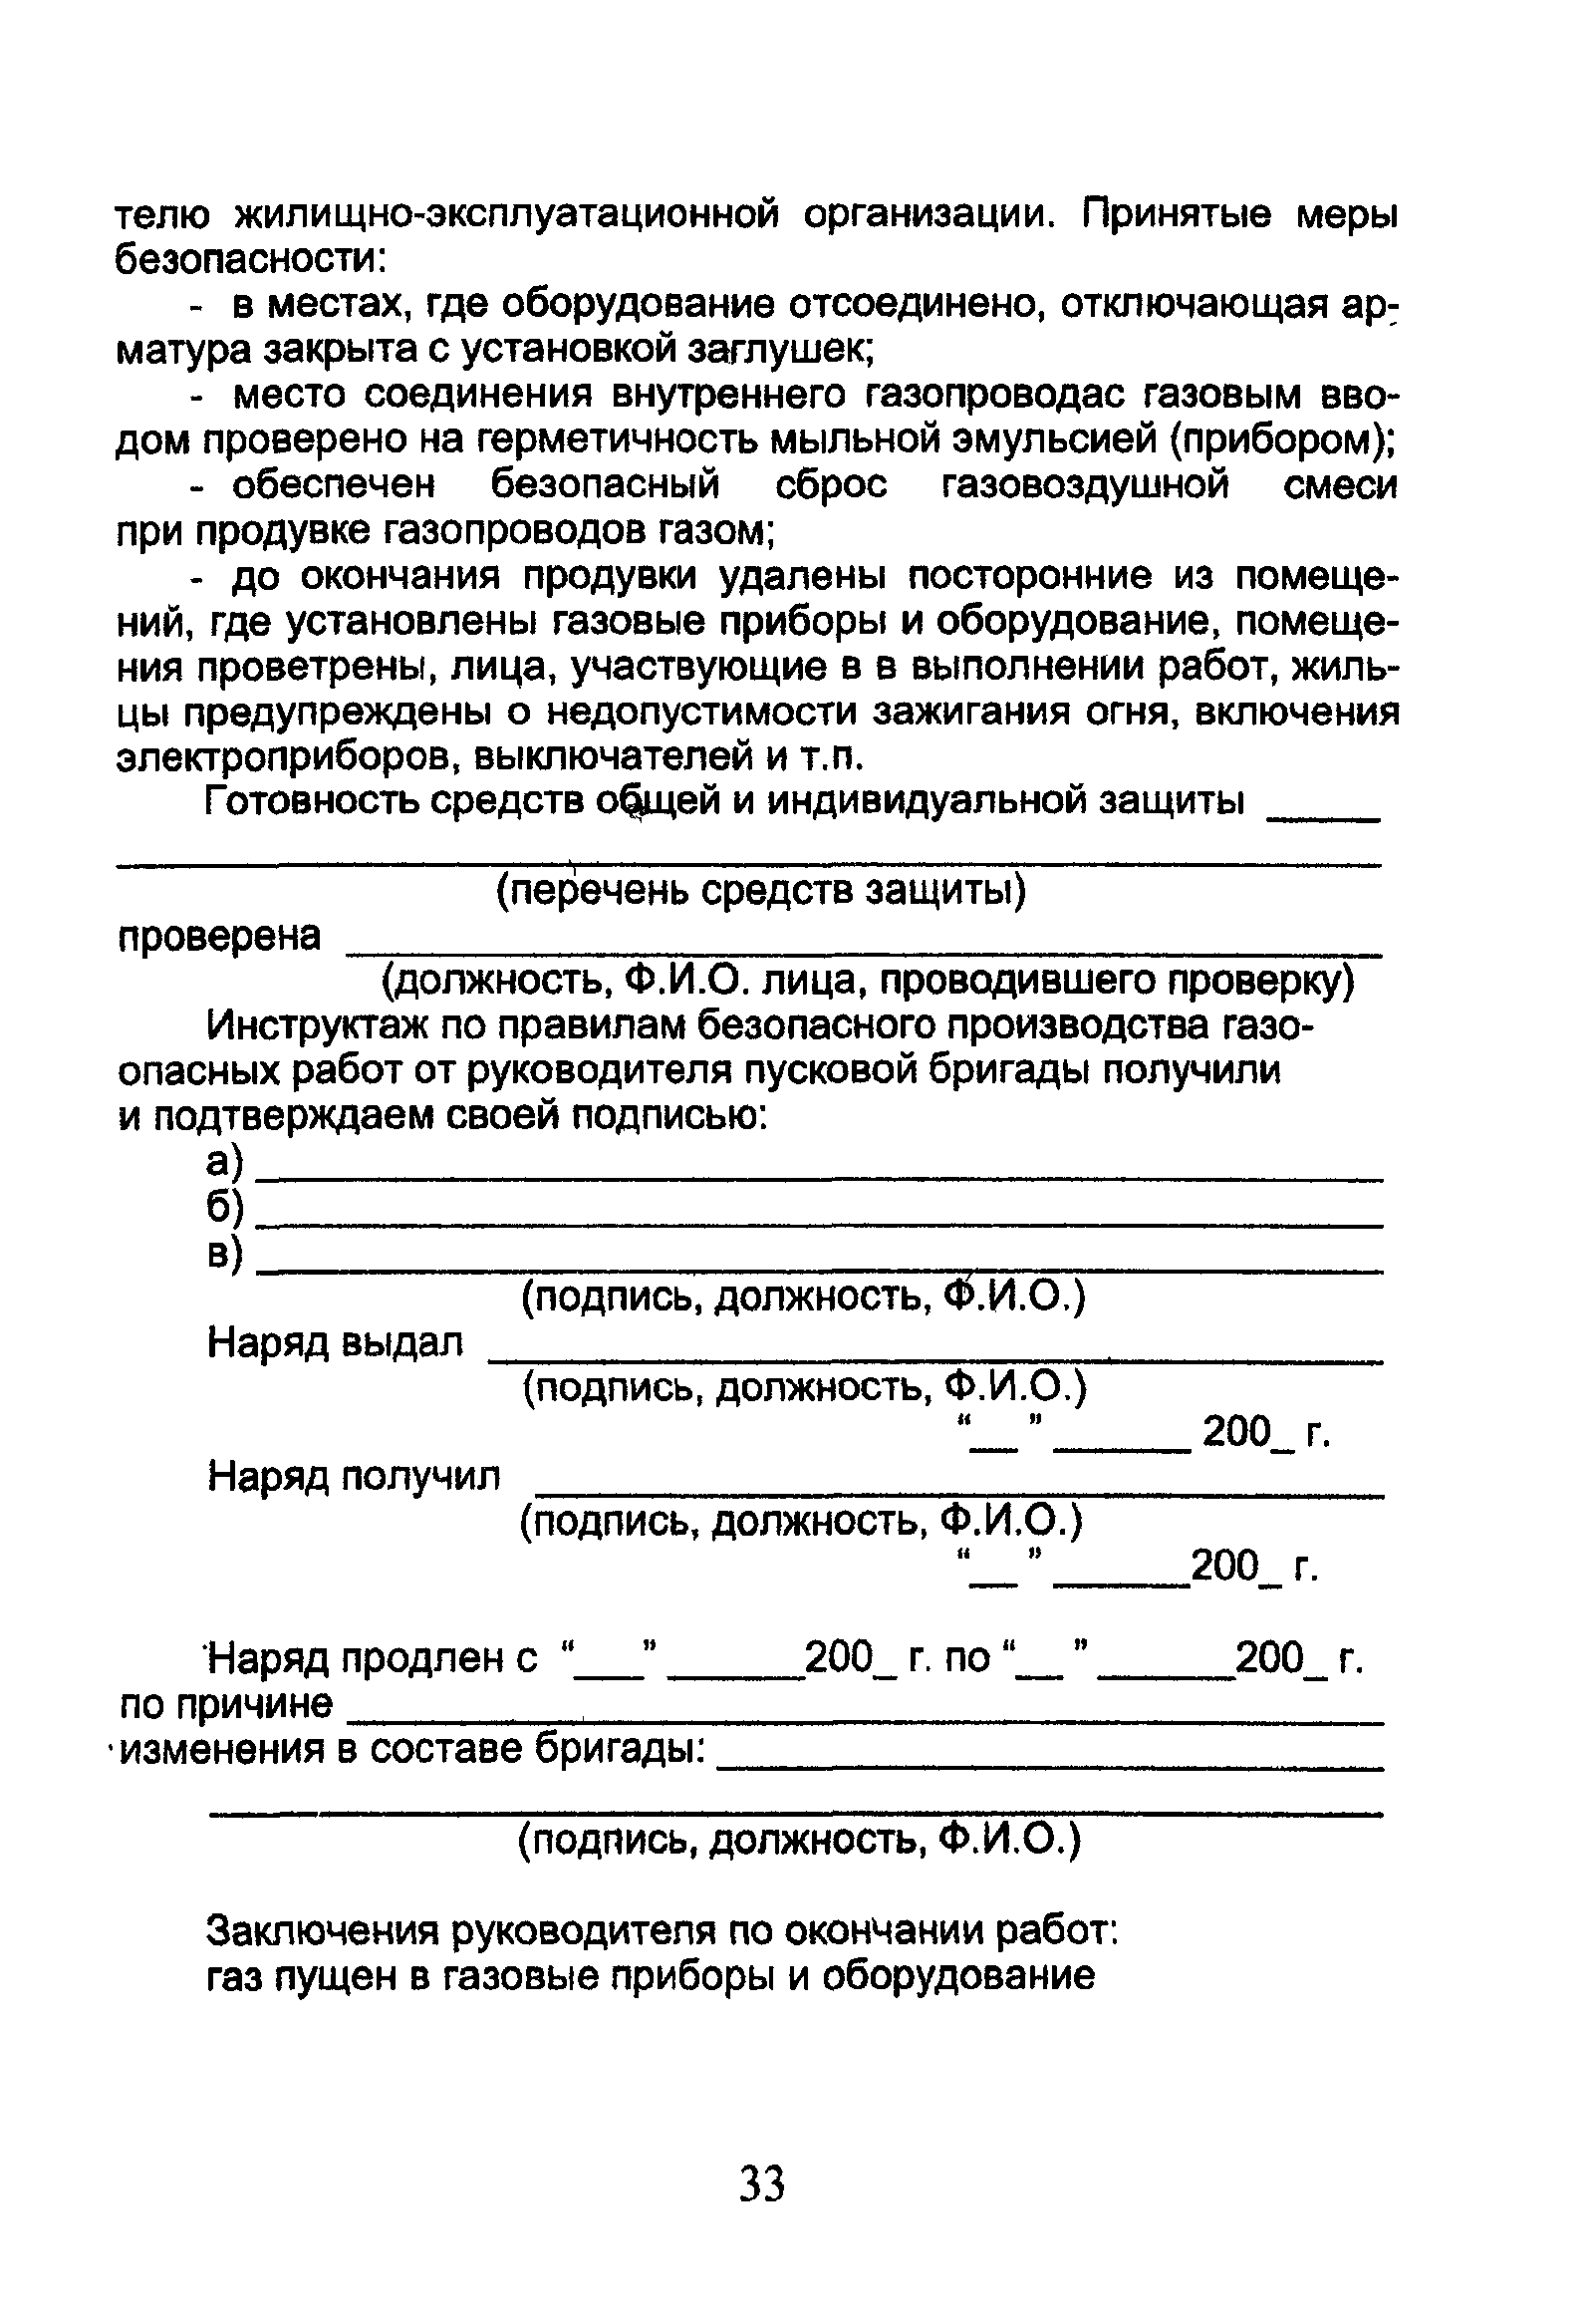 ОСТ 153-39.3-053-2003